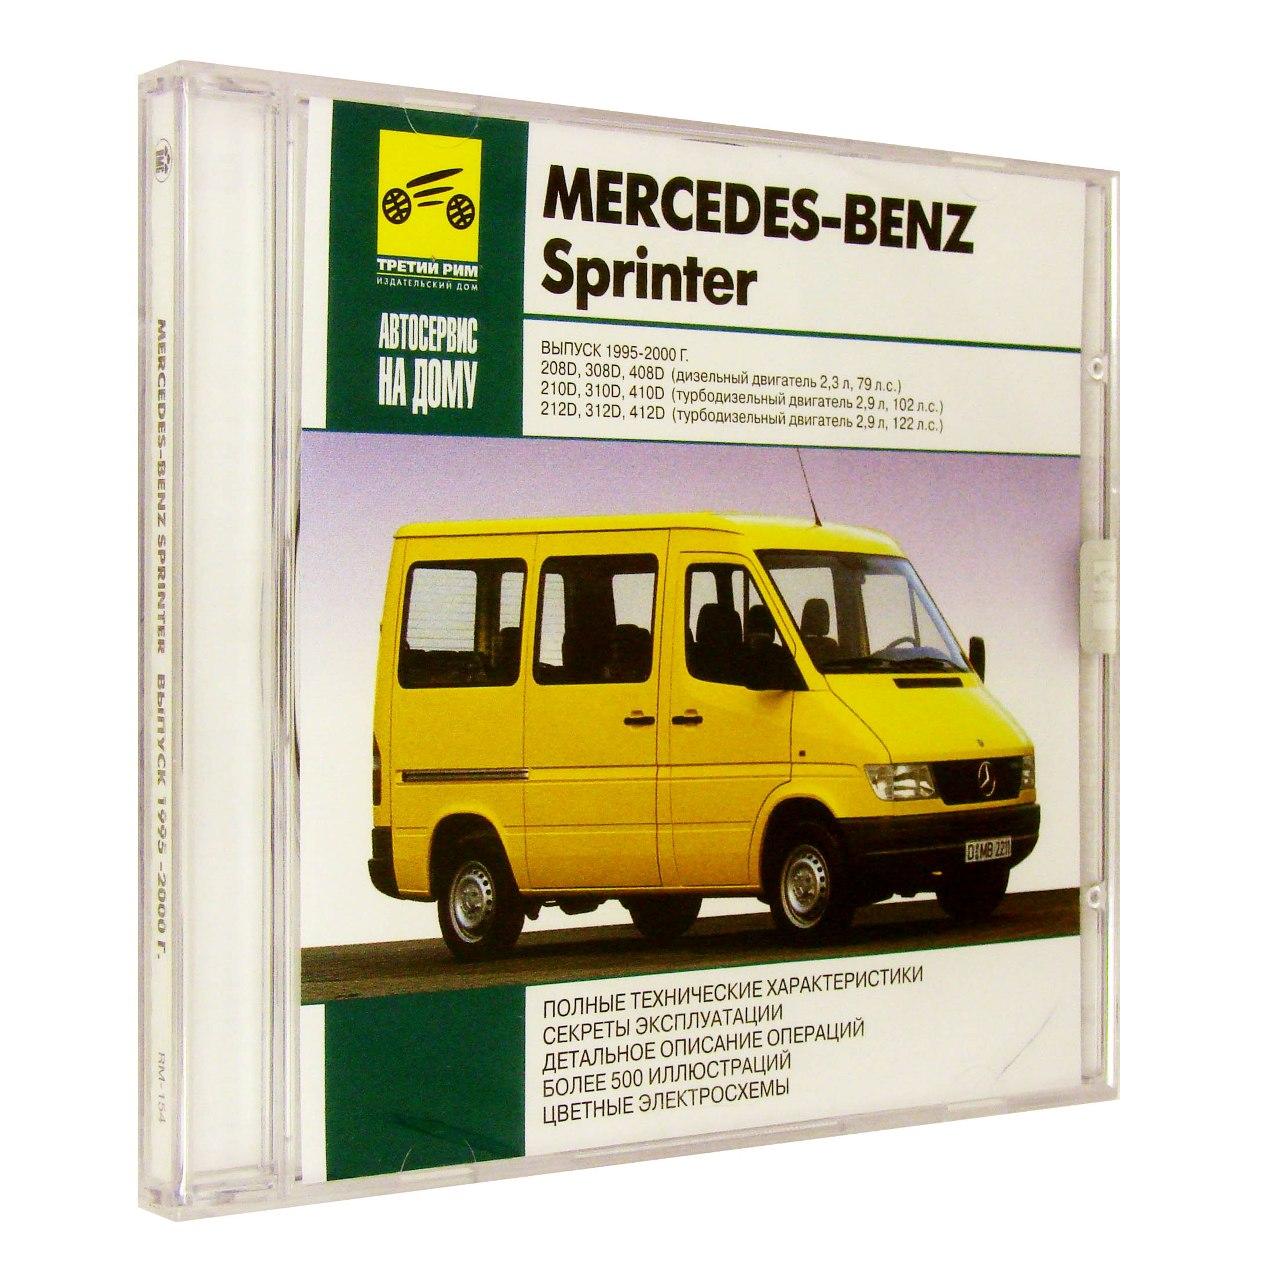 Компьютерный компакт-диск Mercedes-Benz Sprinter Выпуск 1995-2000 Автосервис на дому. (ПК), фирма "RMG Multimedia", 1CD